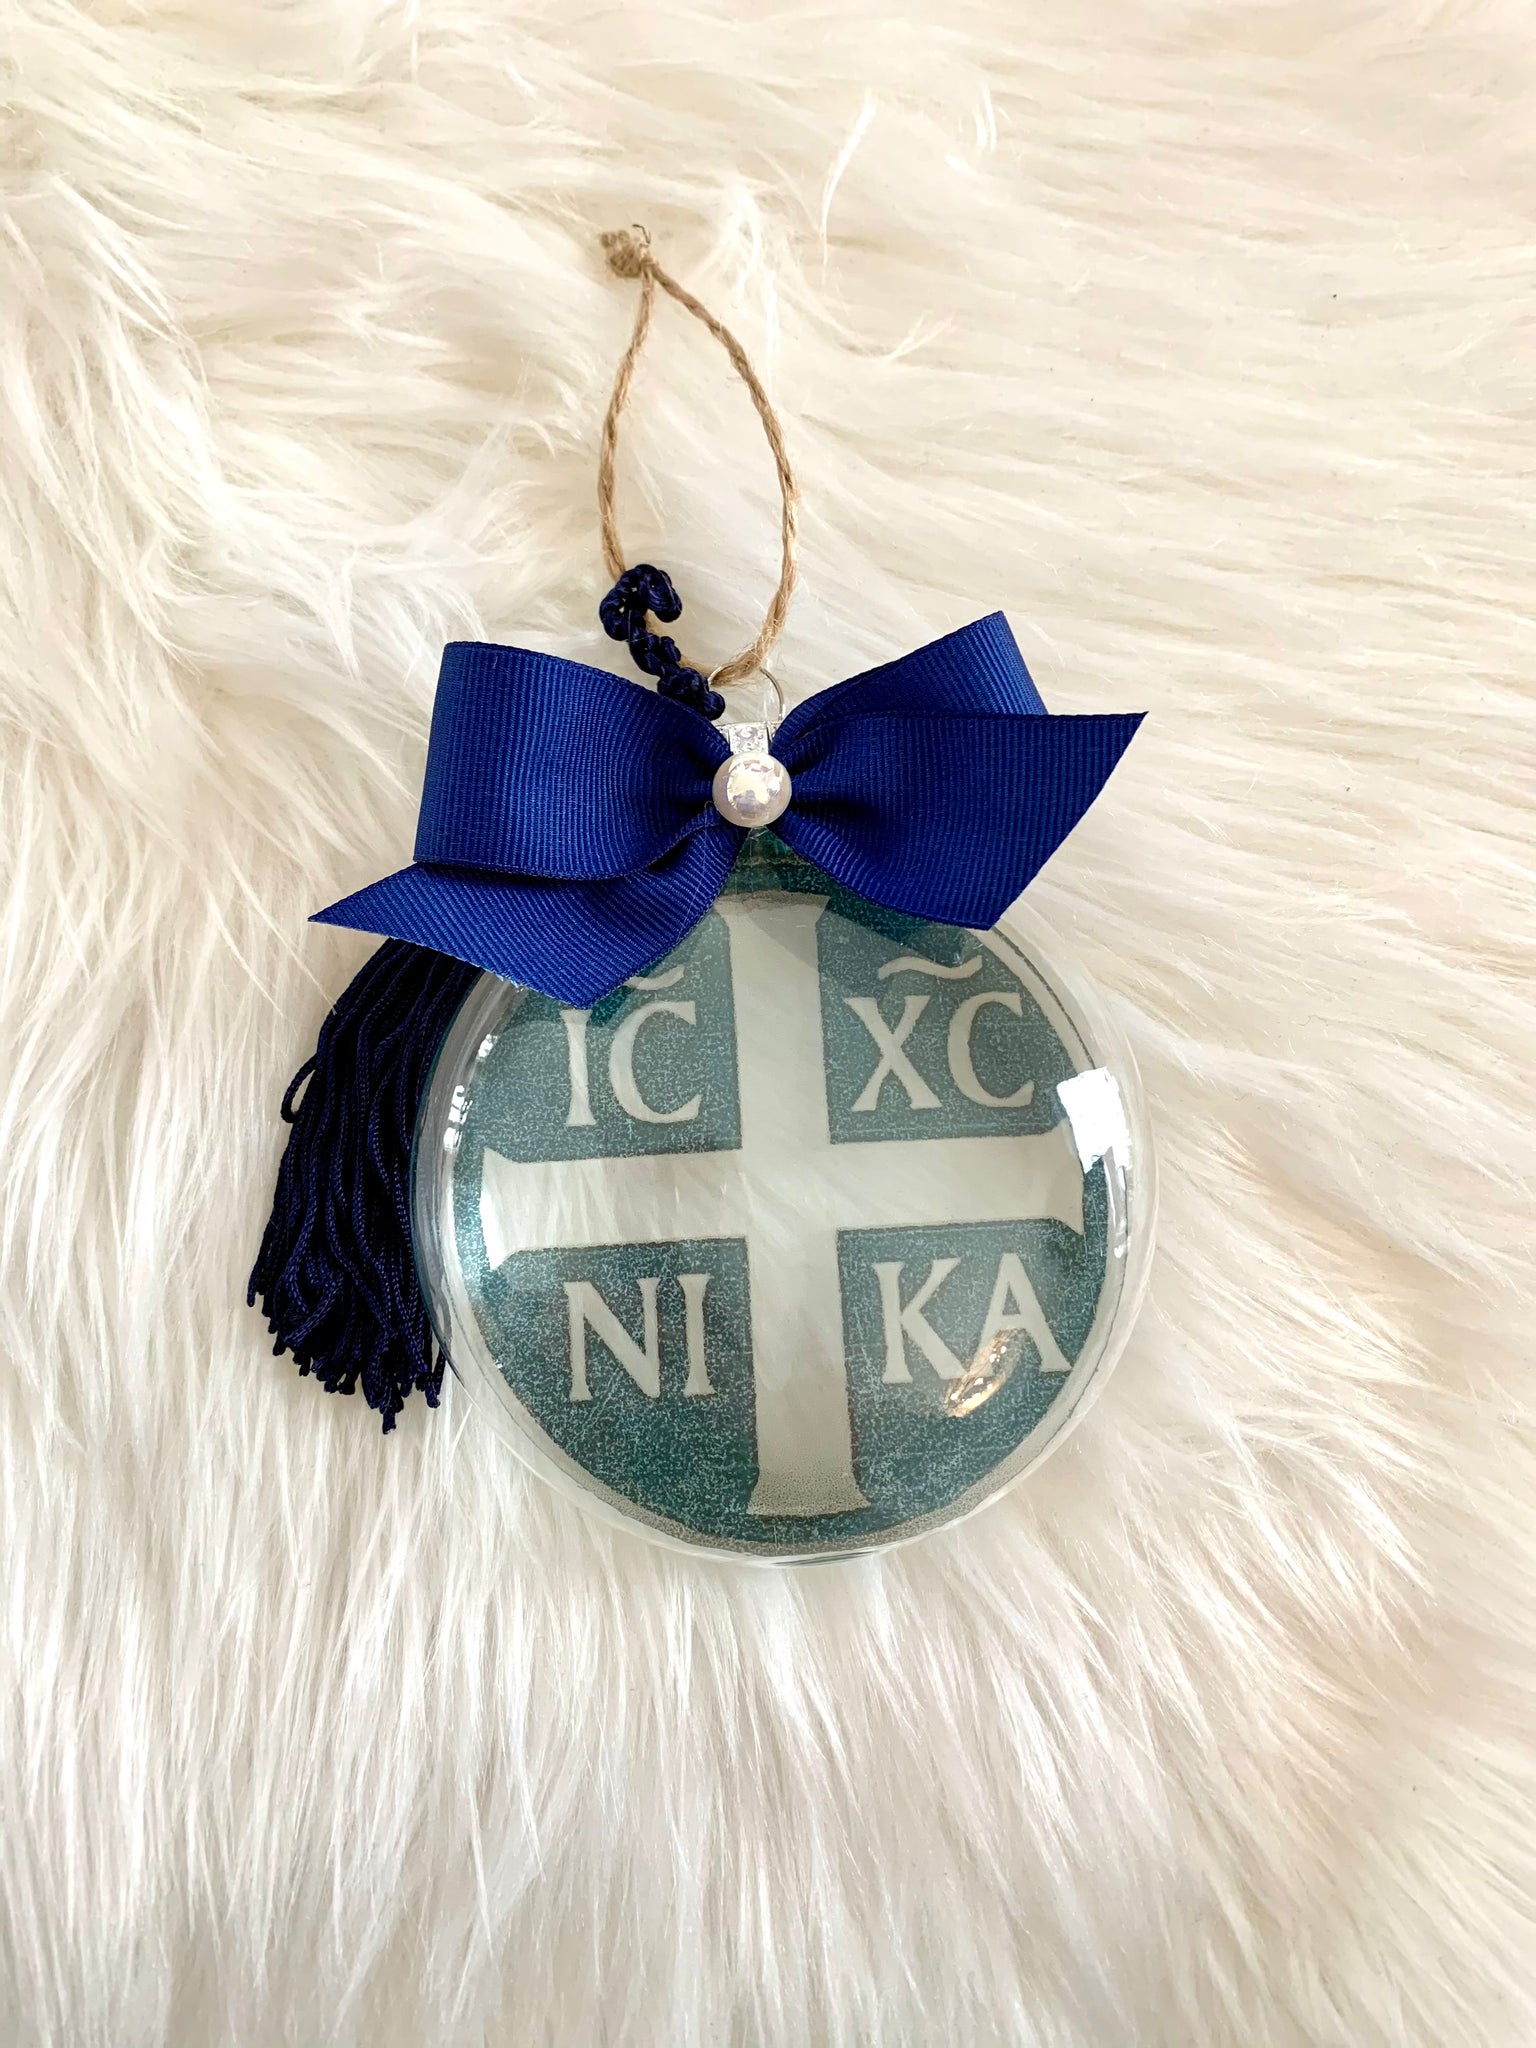 IC XC NI KA Blue Christmas Ornament